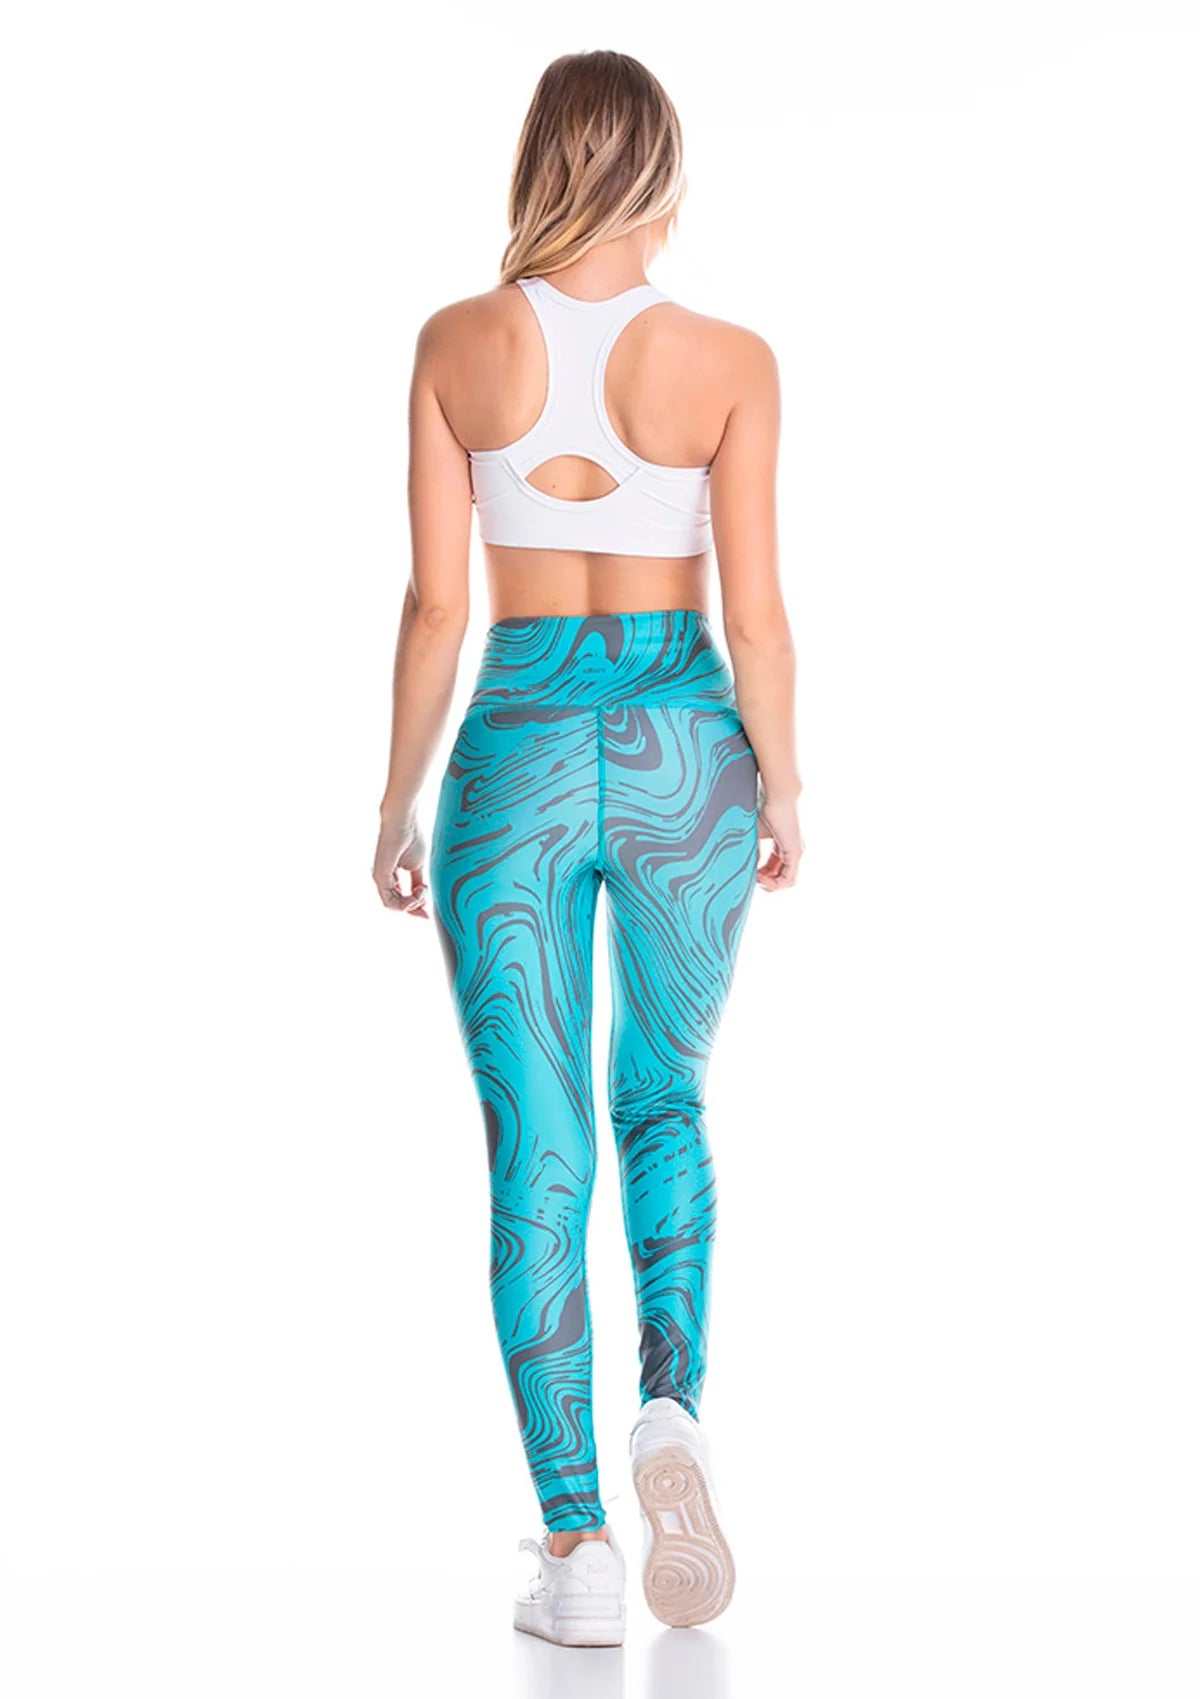 Marble Design - Mint - Runner - Yoga Pants - Leggings - Fitness - Gym